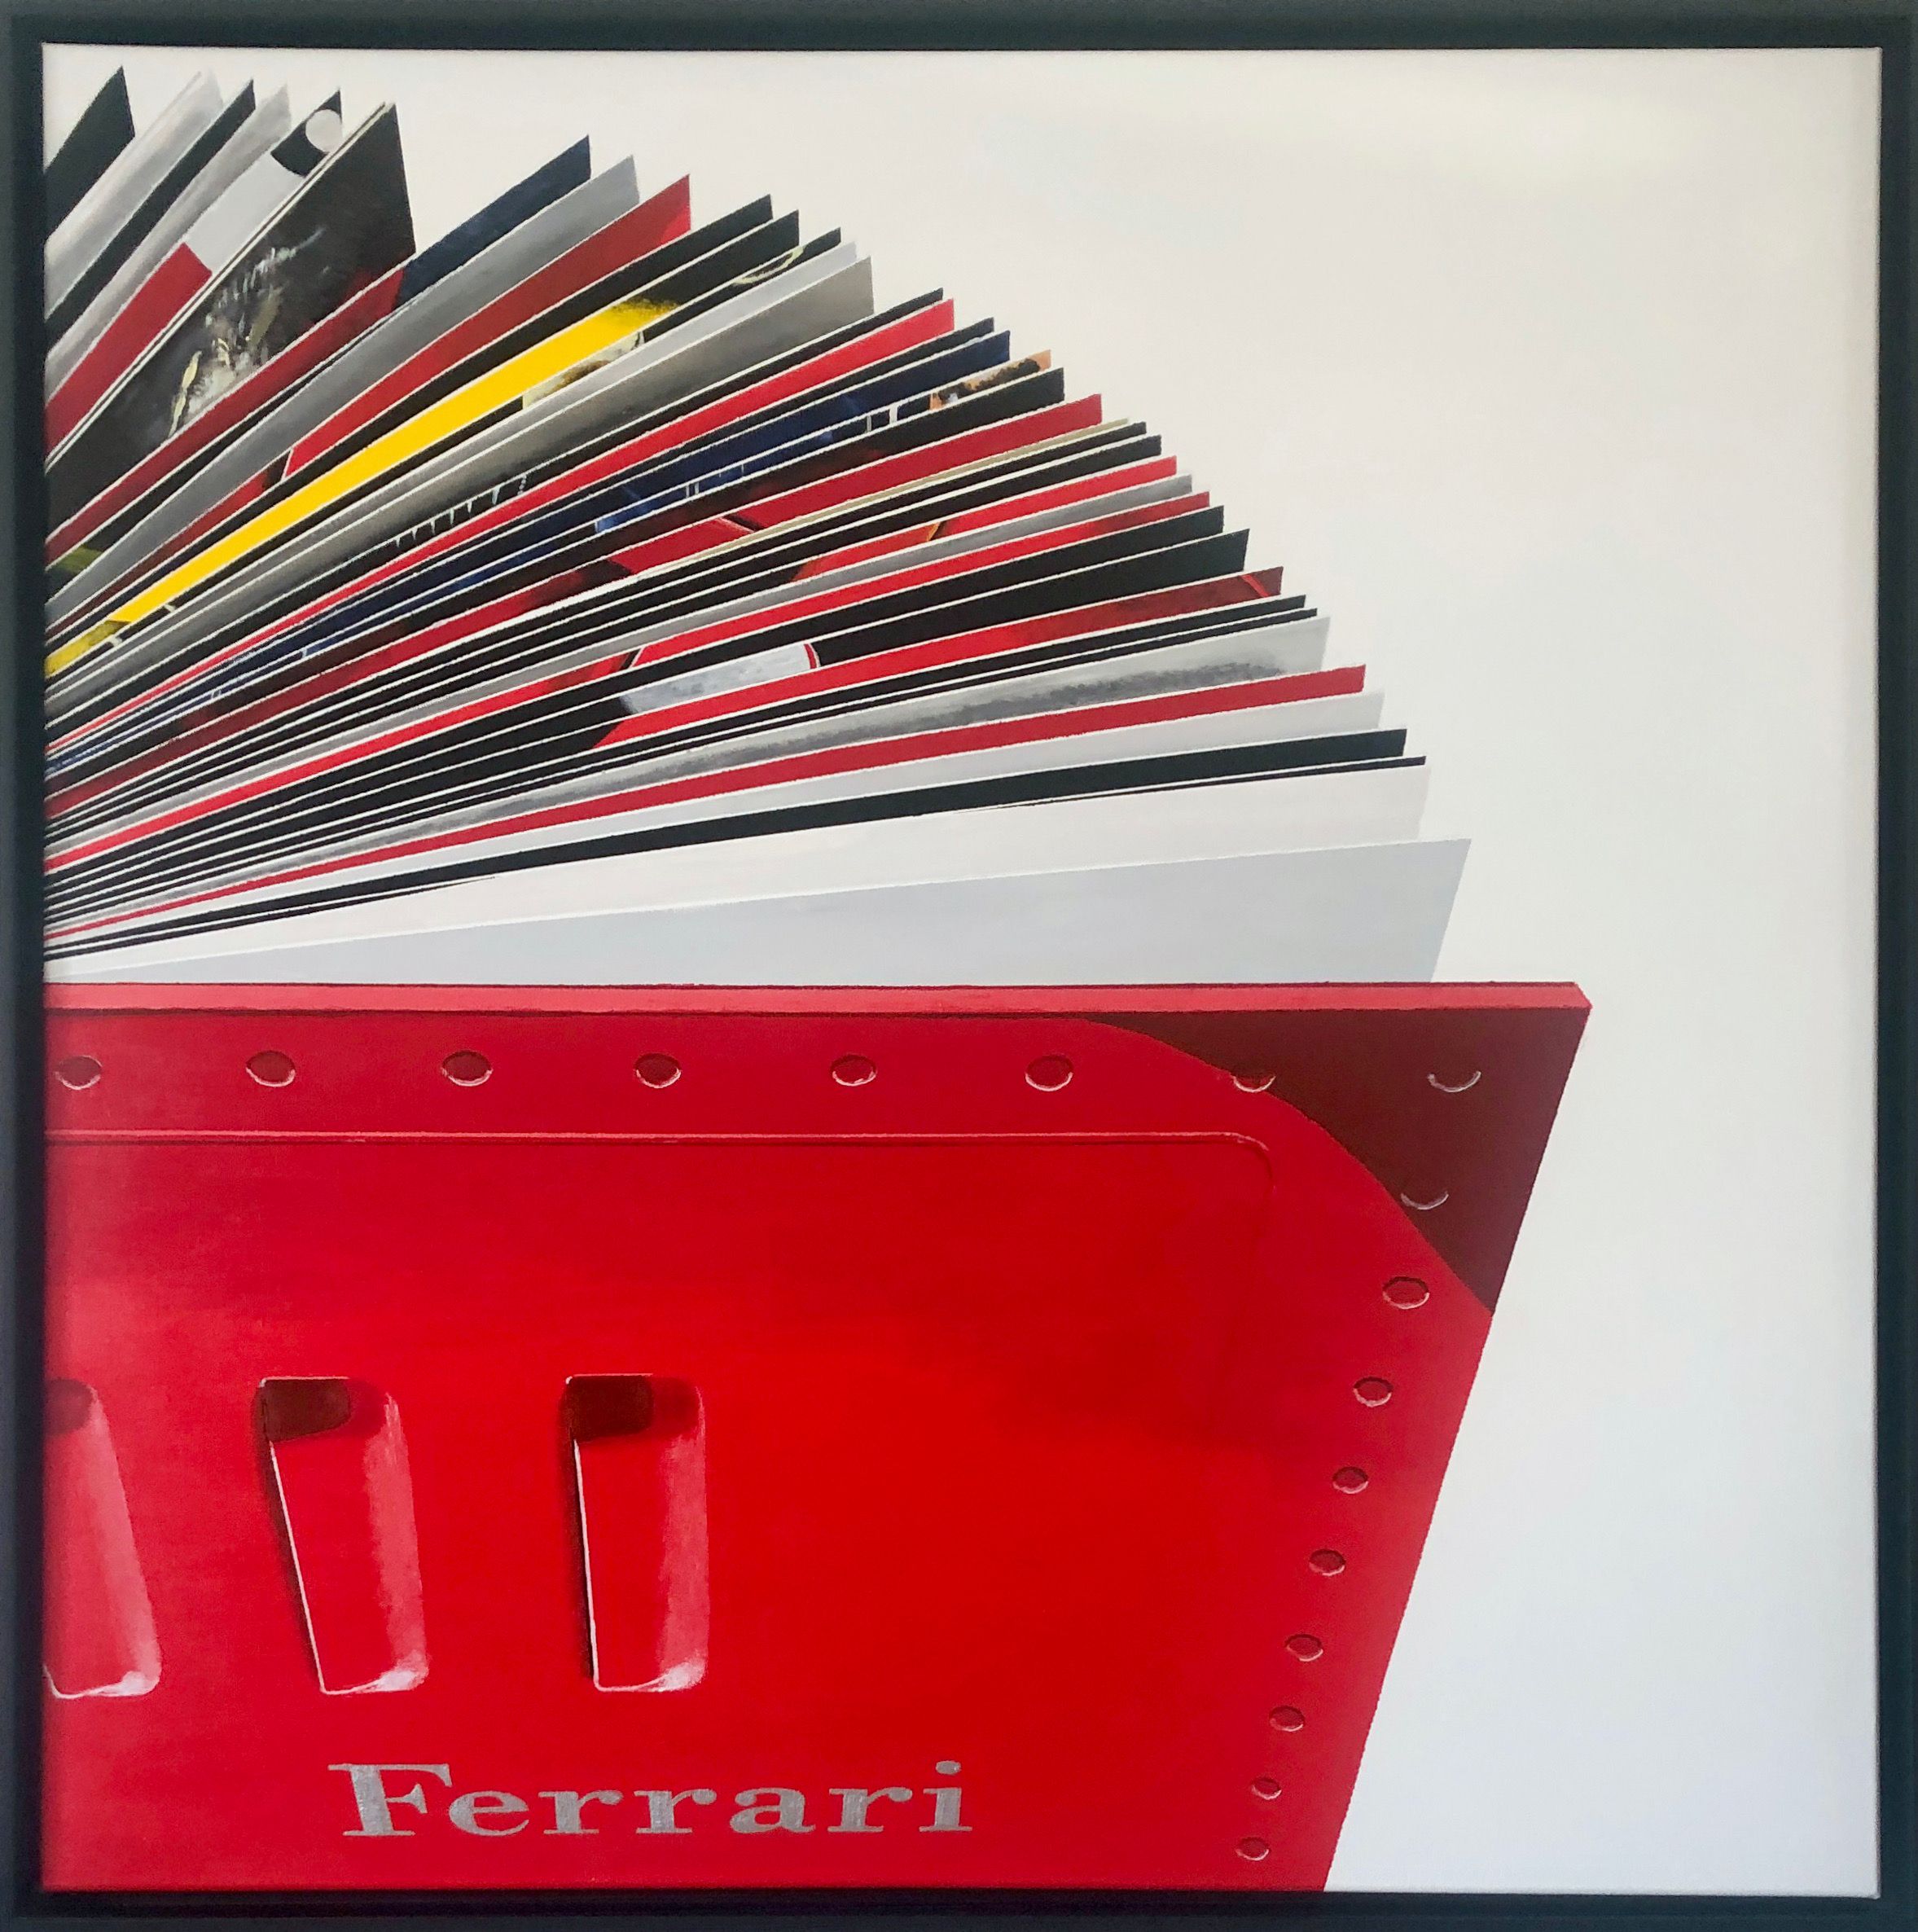 Rolf Gnauck "FERRARI" Dipinto dettagliato e colorato di grande formato di un libro aperto